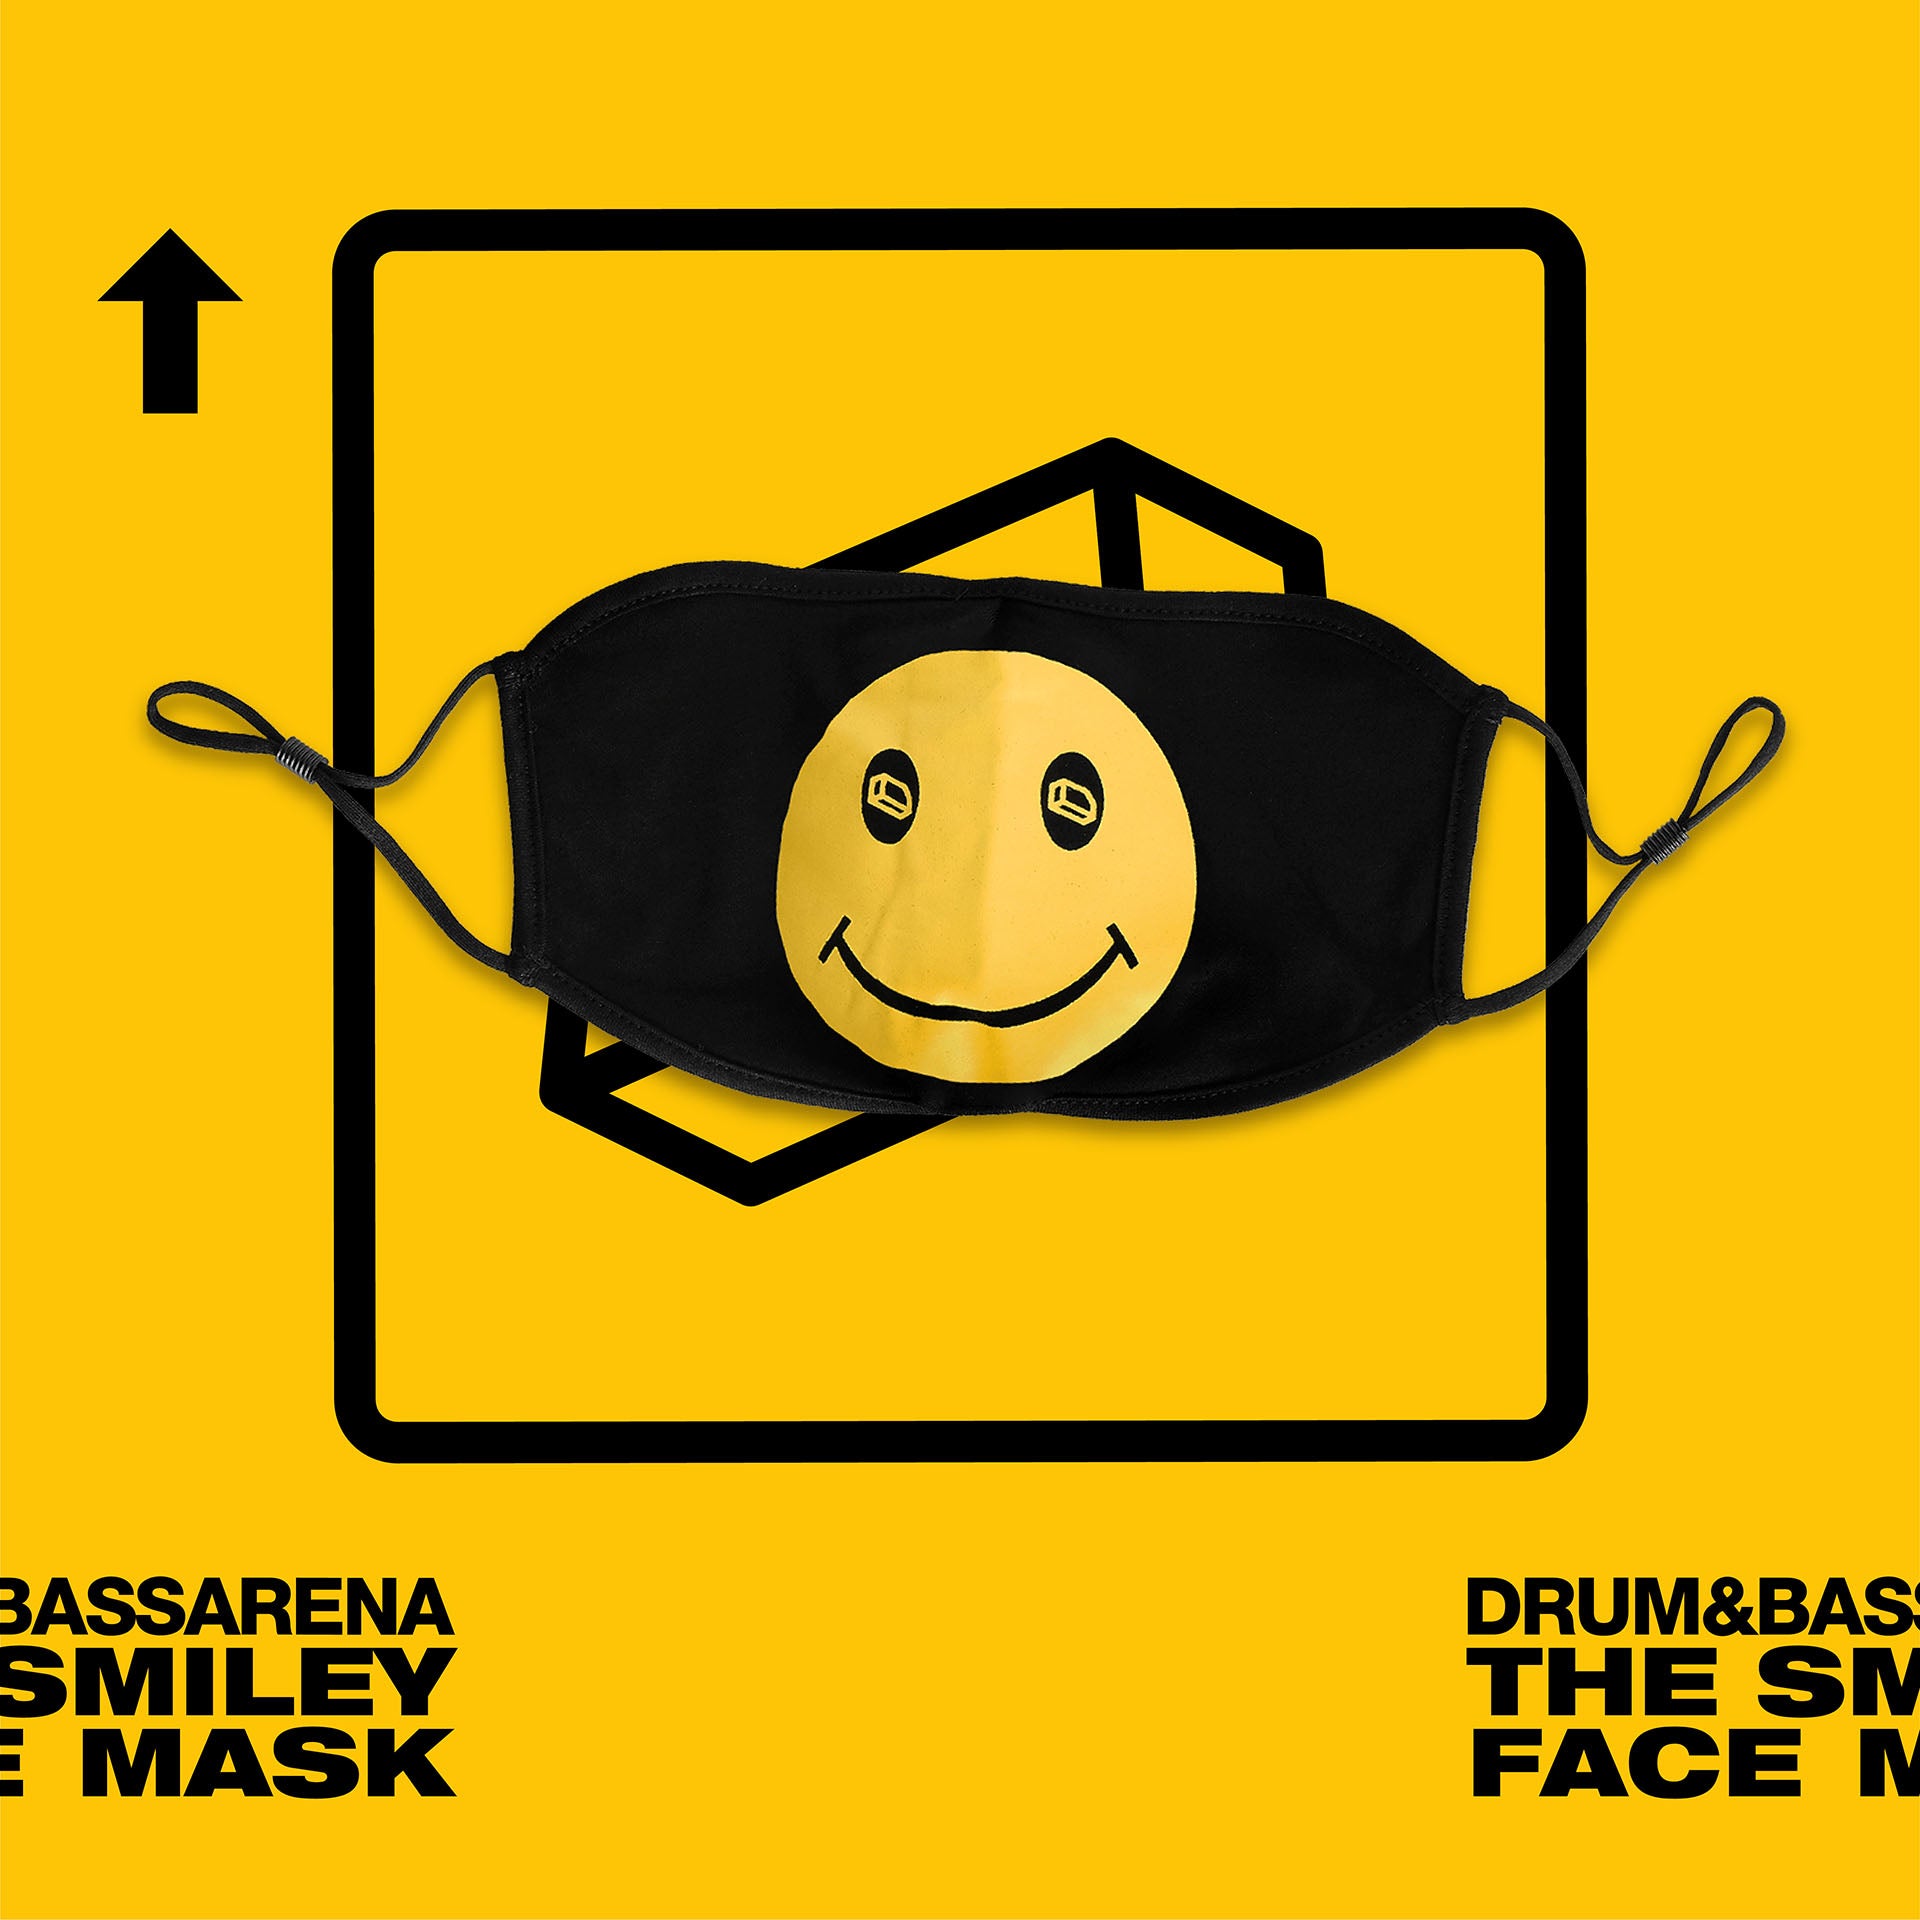 Die Smiley-Maske